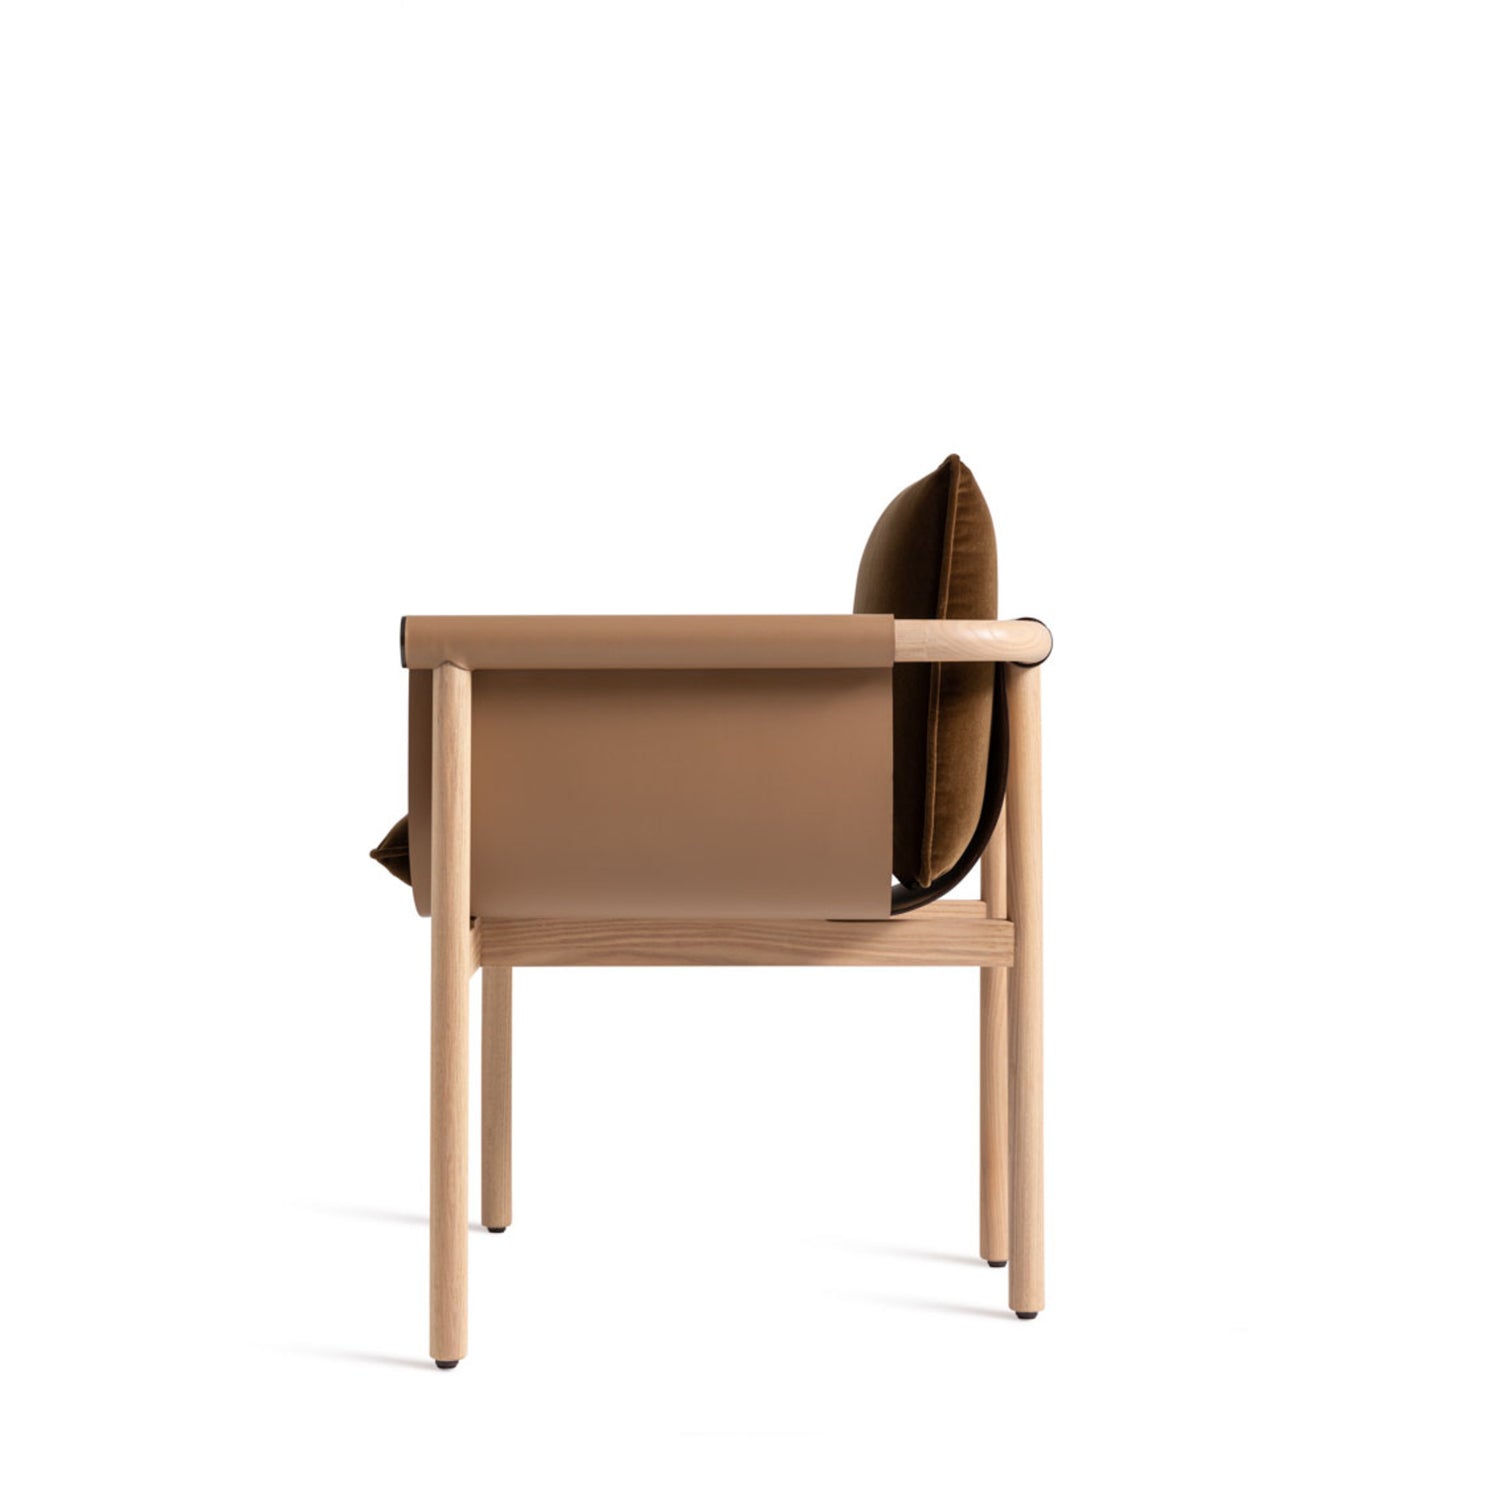 Totu Wood Chair